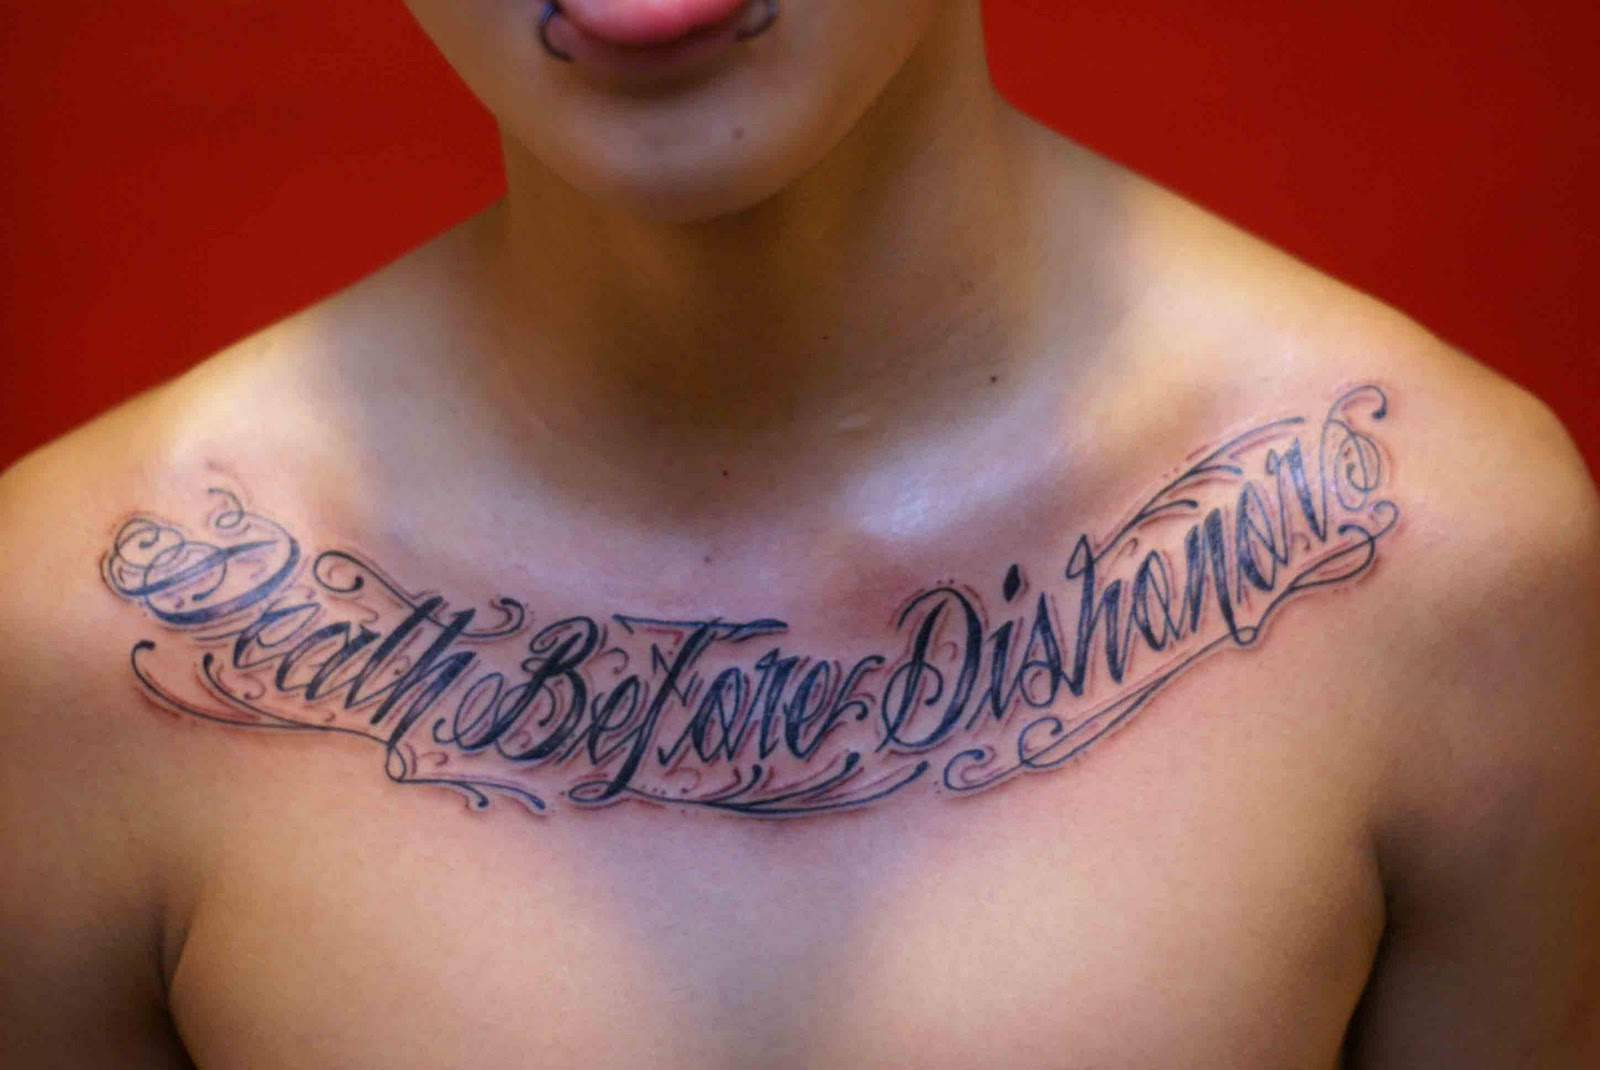 http://3.bp.blogspot.com/-XDmjHpDLB8s/TnrwvVEzw1I/AAAAAAAAAak/tMF7aJNRBOM/s1600/Cursive+Tattoos-free-tattooo.blogspot.com-derick-death-before.jpg